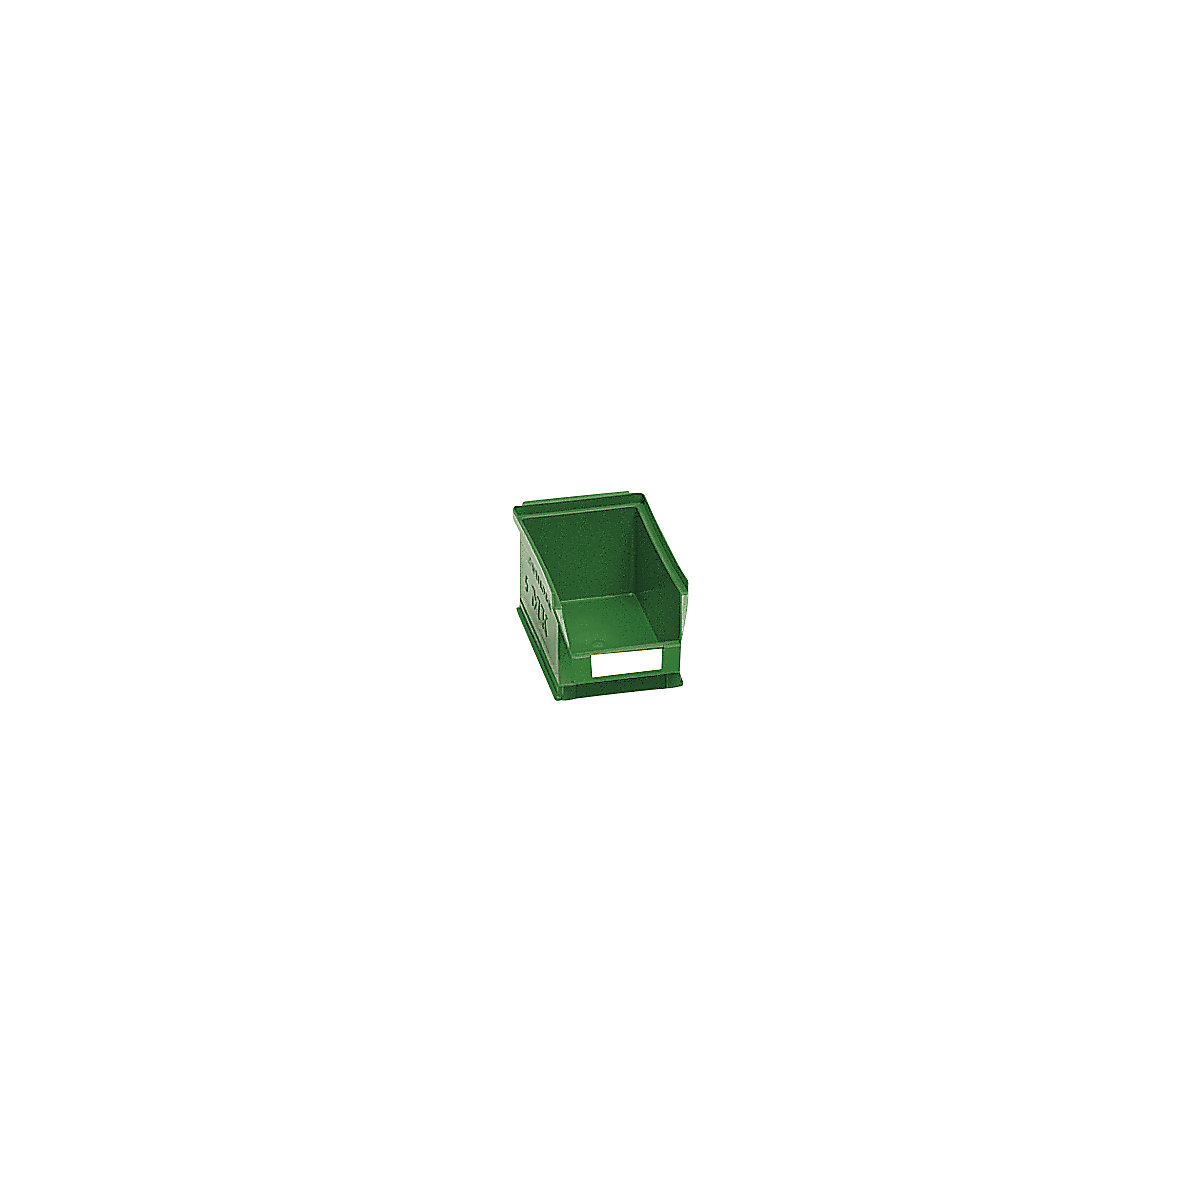 Sichtlagerkasten aus Polyethylen mauser, LxBxH 160 x 100 x 75 mm, grün, VE 25 Stk-8